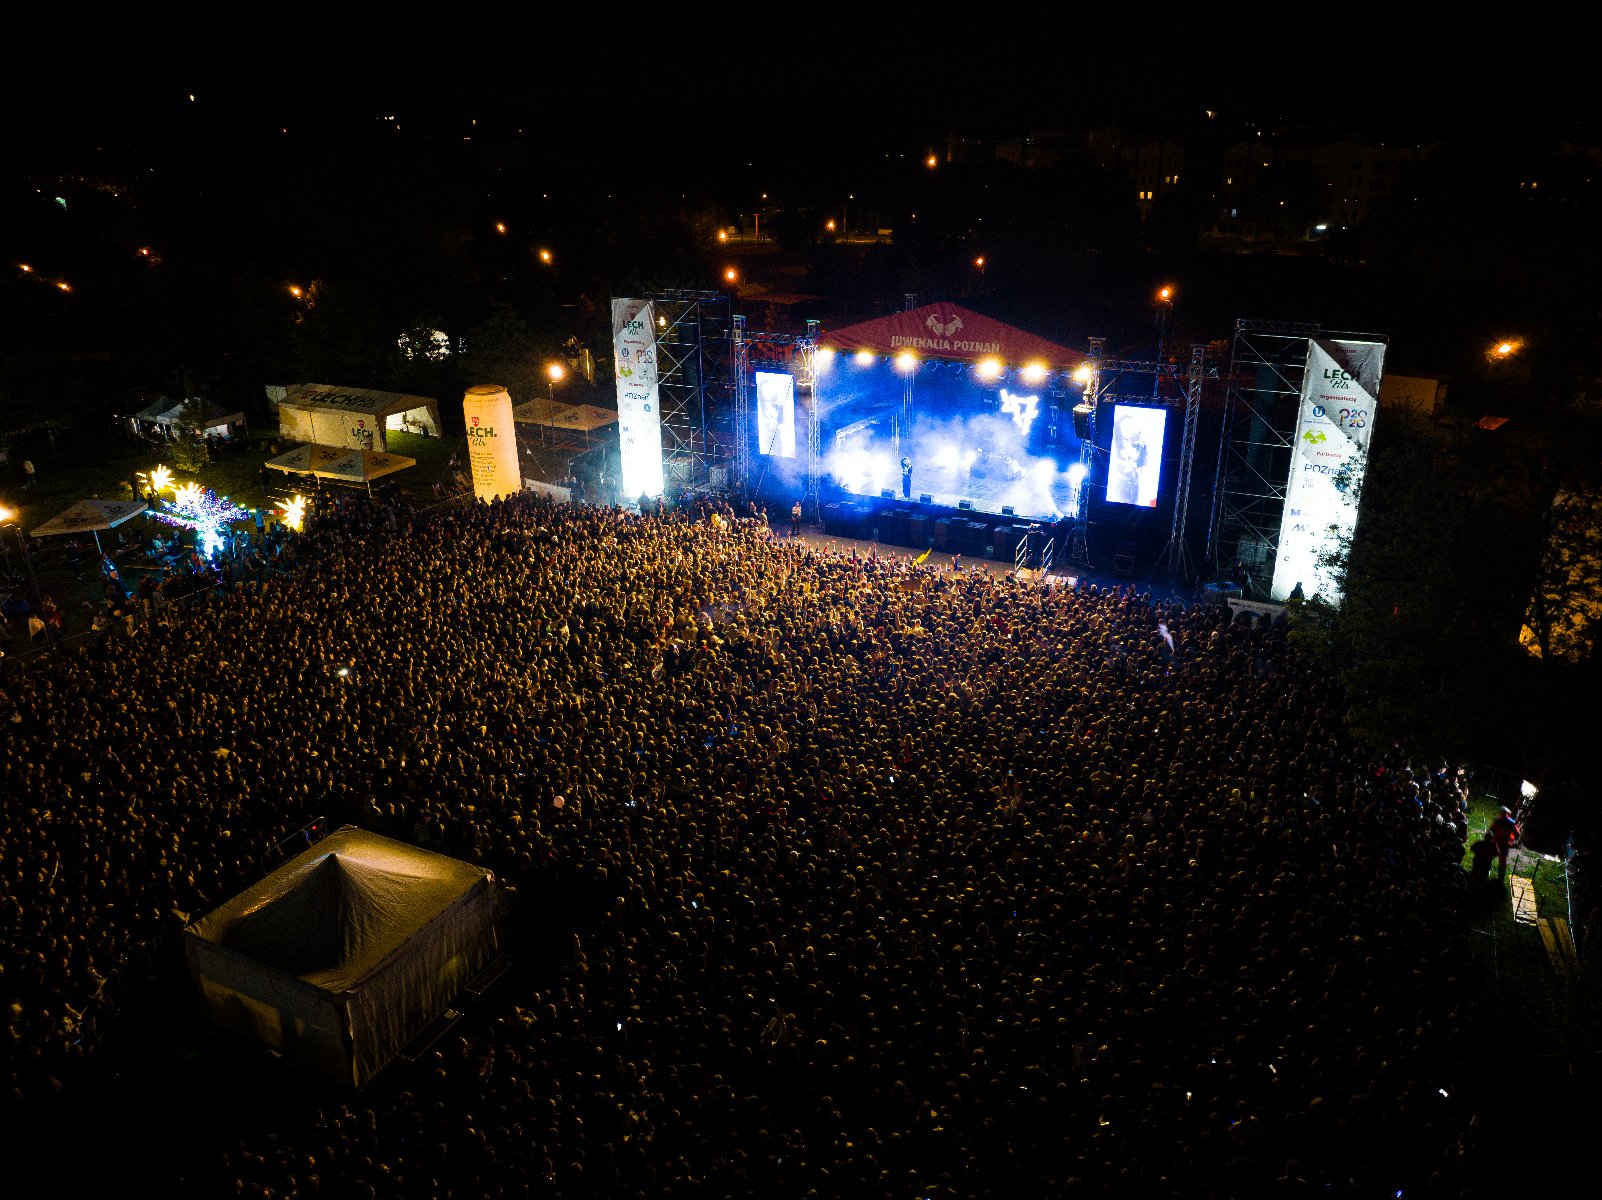 Zdjęcie z powietrza pokazujące tłum publiczności zgromadzony przed sceną oświetloną światłami scenicznymi - grafika artykułu